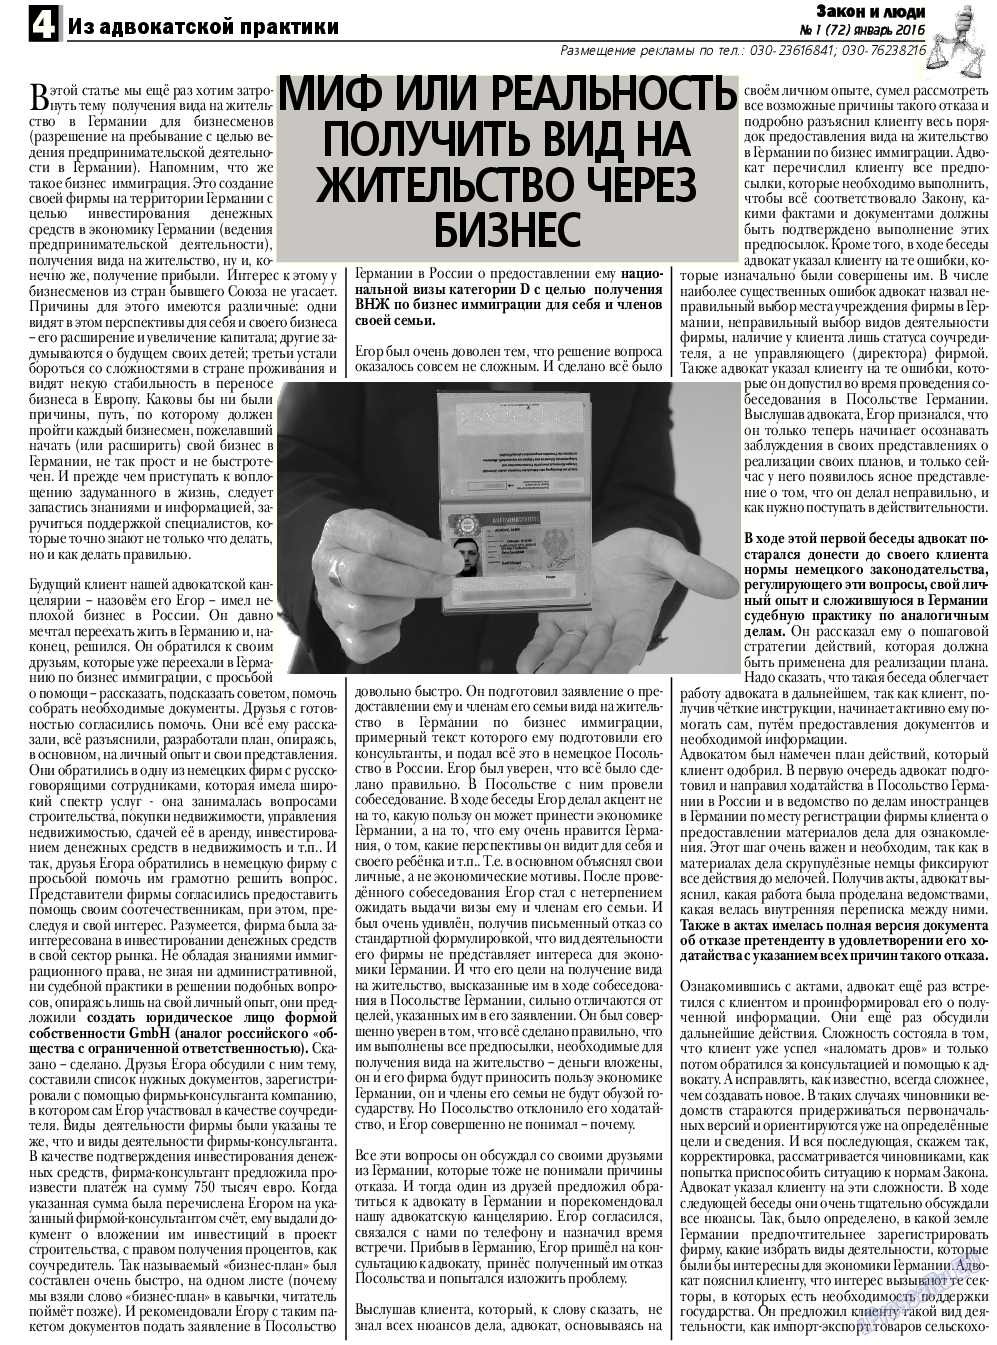 Закон и люди, газета. 2016 №1 стр.4